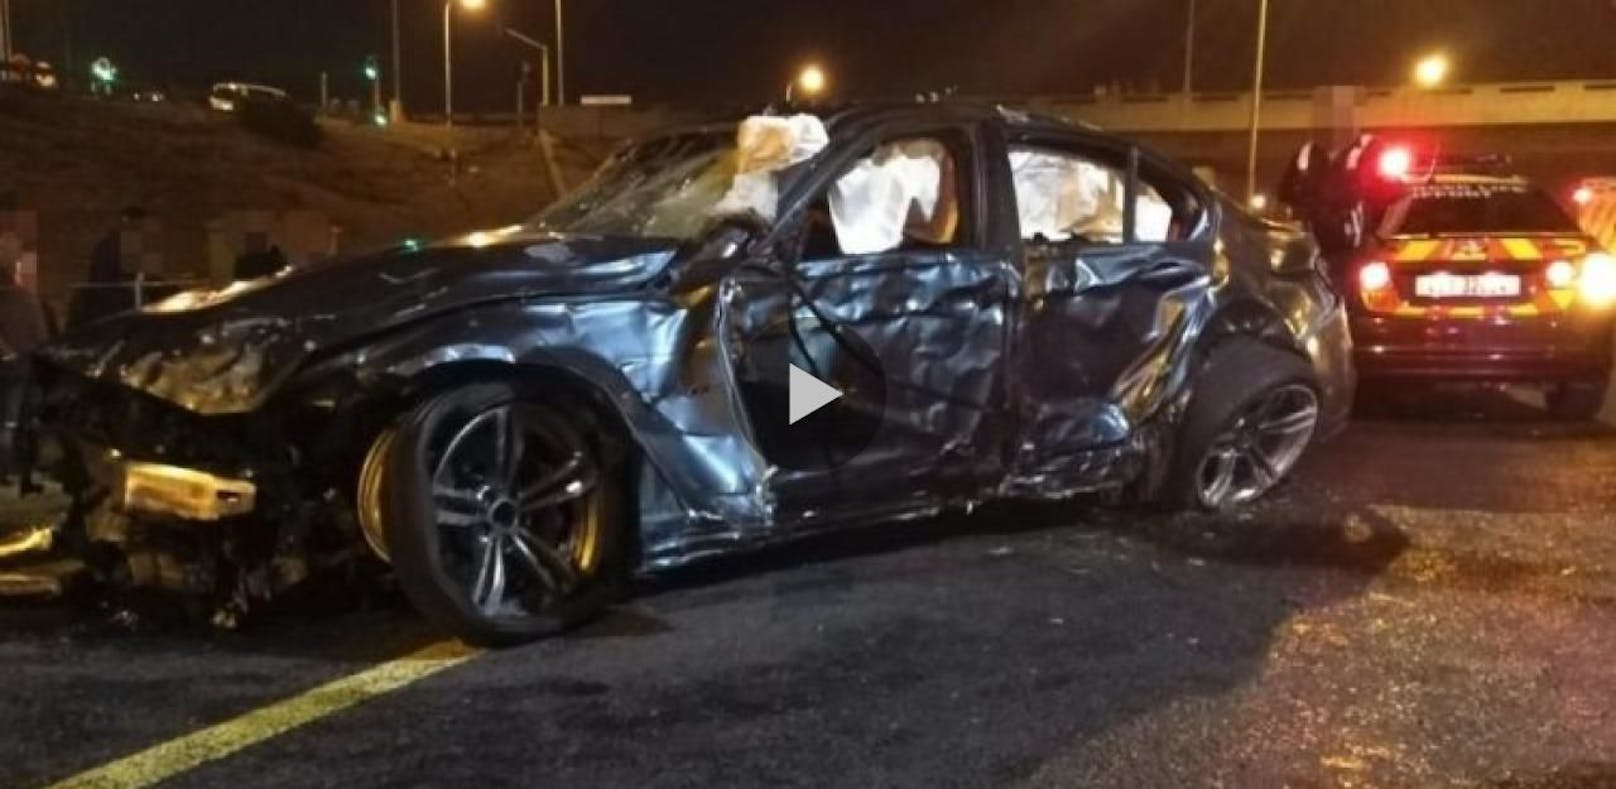 BMW M3 überschlagen: Horror-Crash geht viral